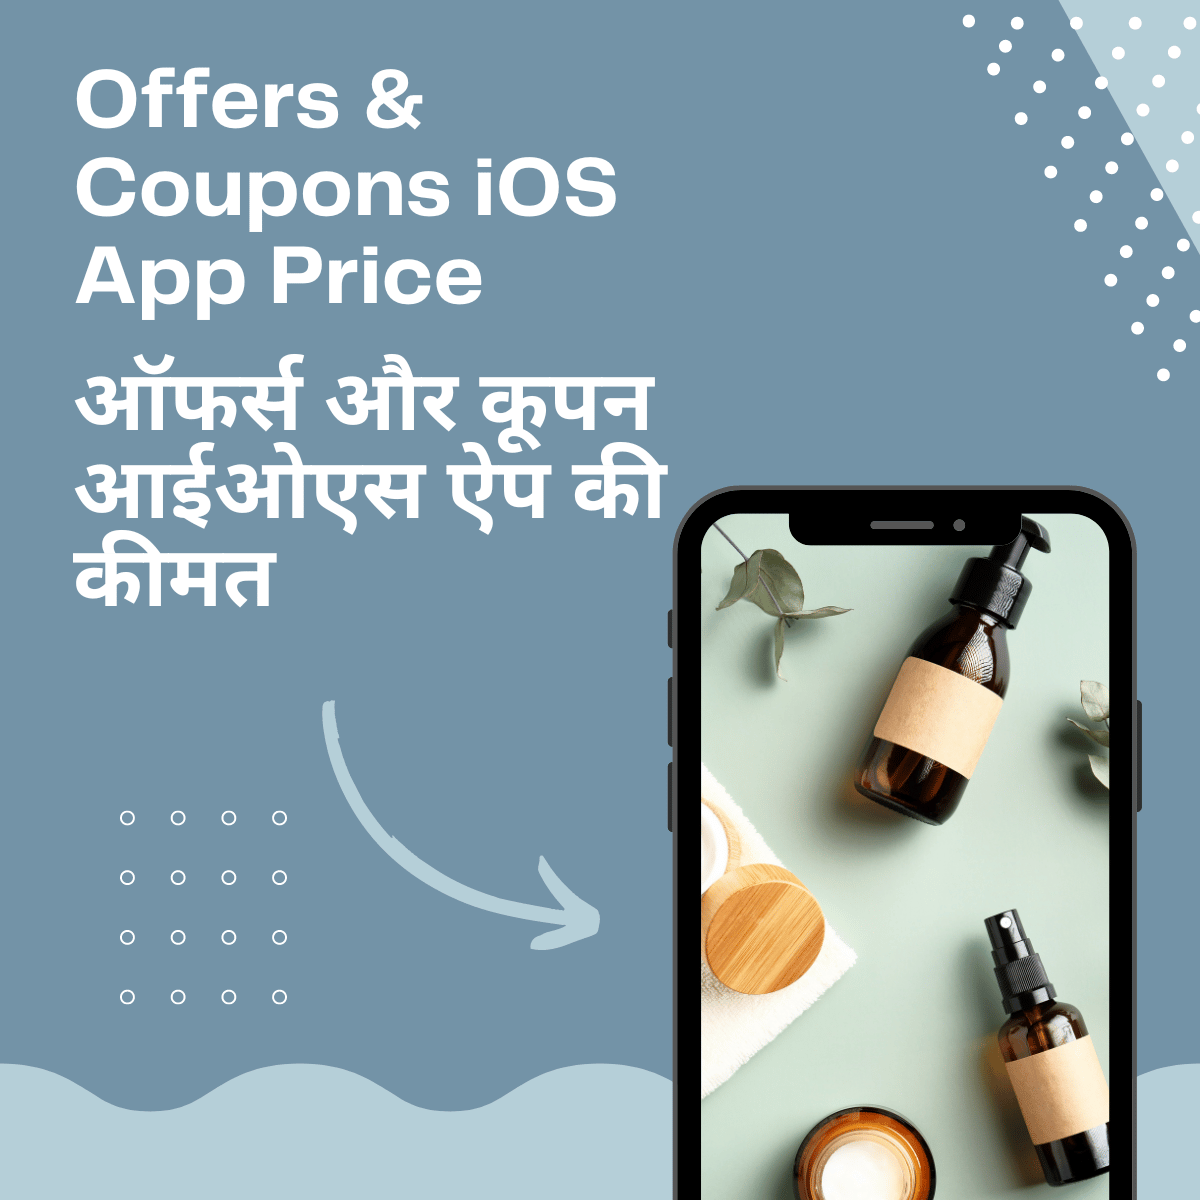 Offers & Coupons iOS App Price

ऑफर्स और कूपन आईओएस ऐप की कीमत